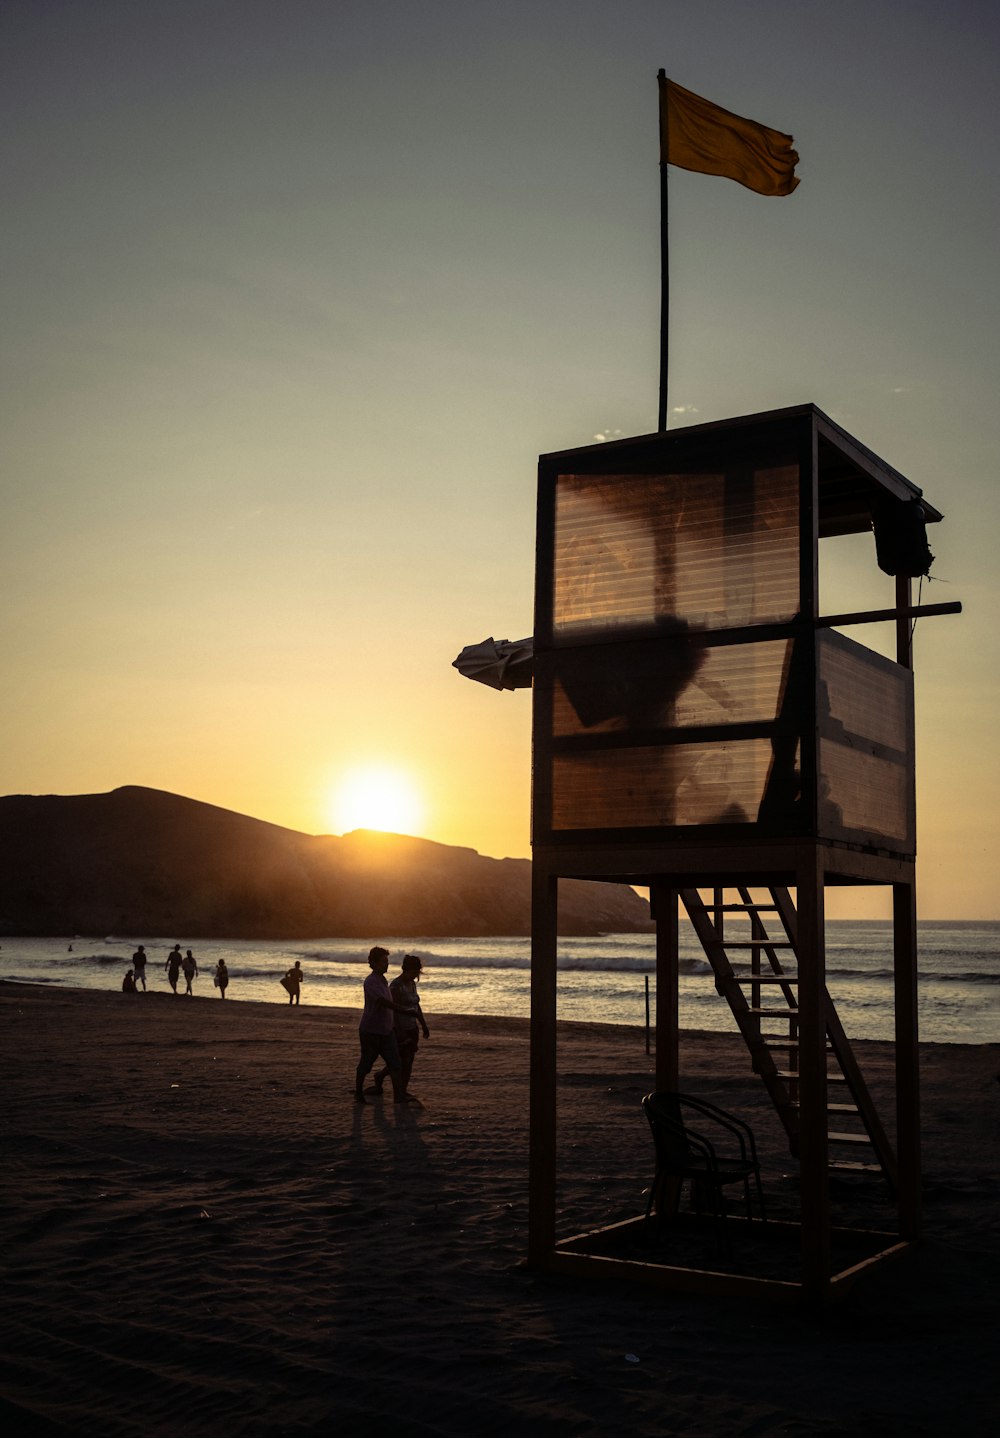 Ein Rettungsschwimmerturm am Strand bei Sonnenuntergang